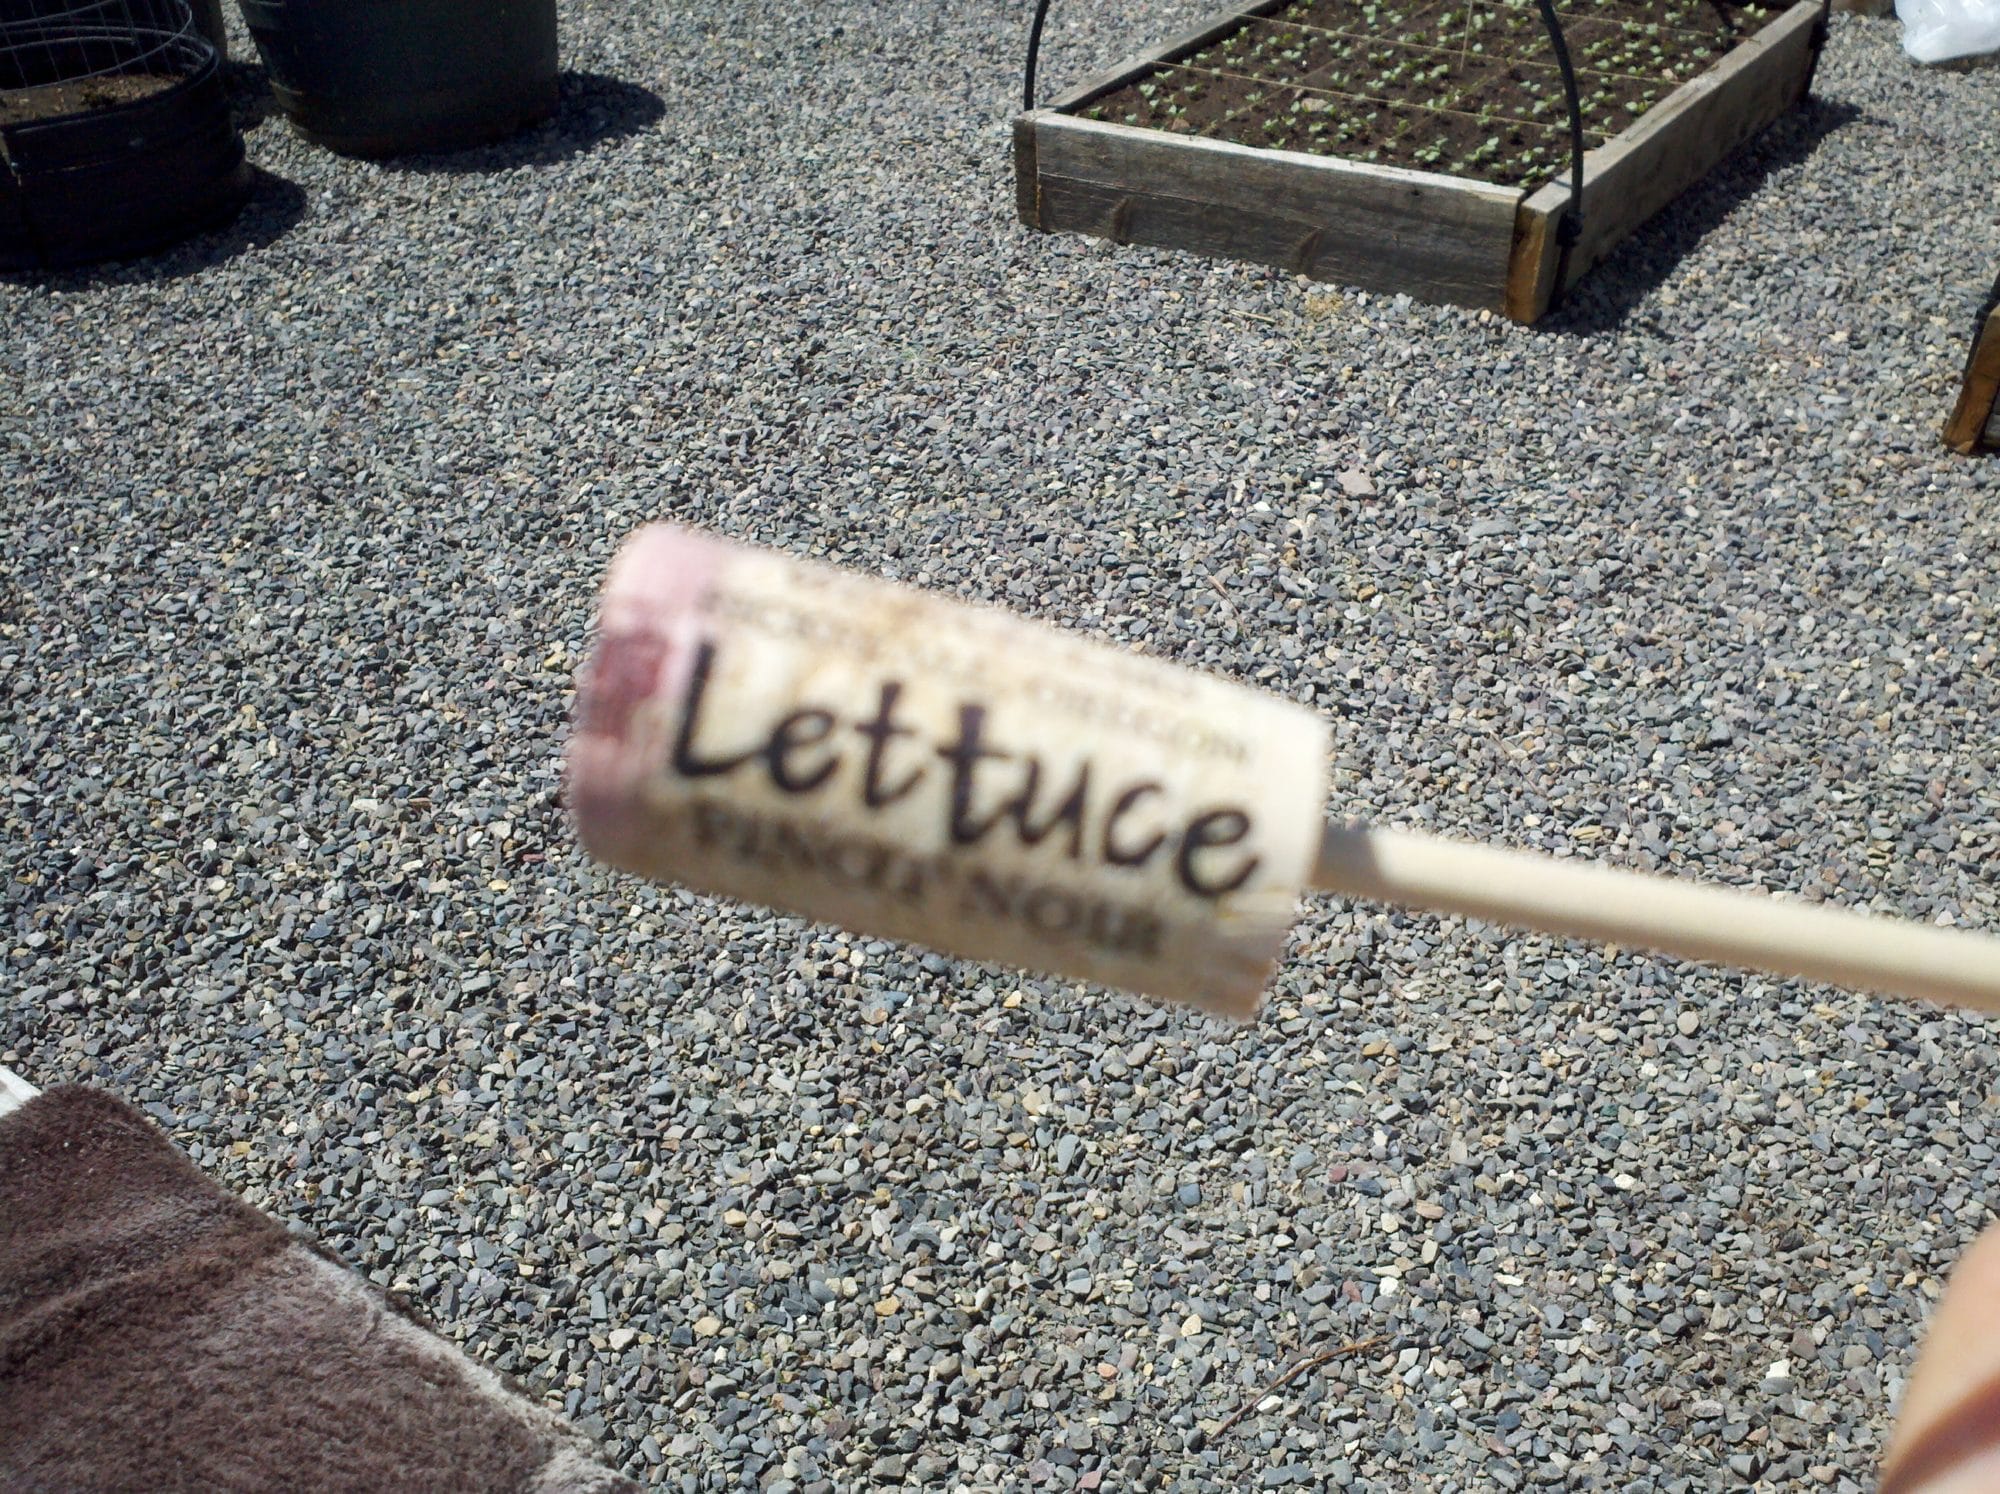 The word lettuce written on a cork